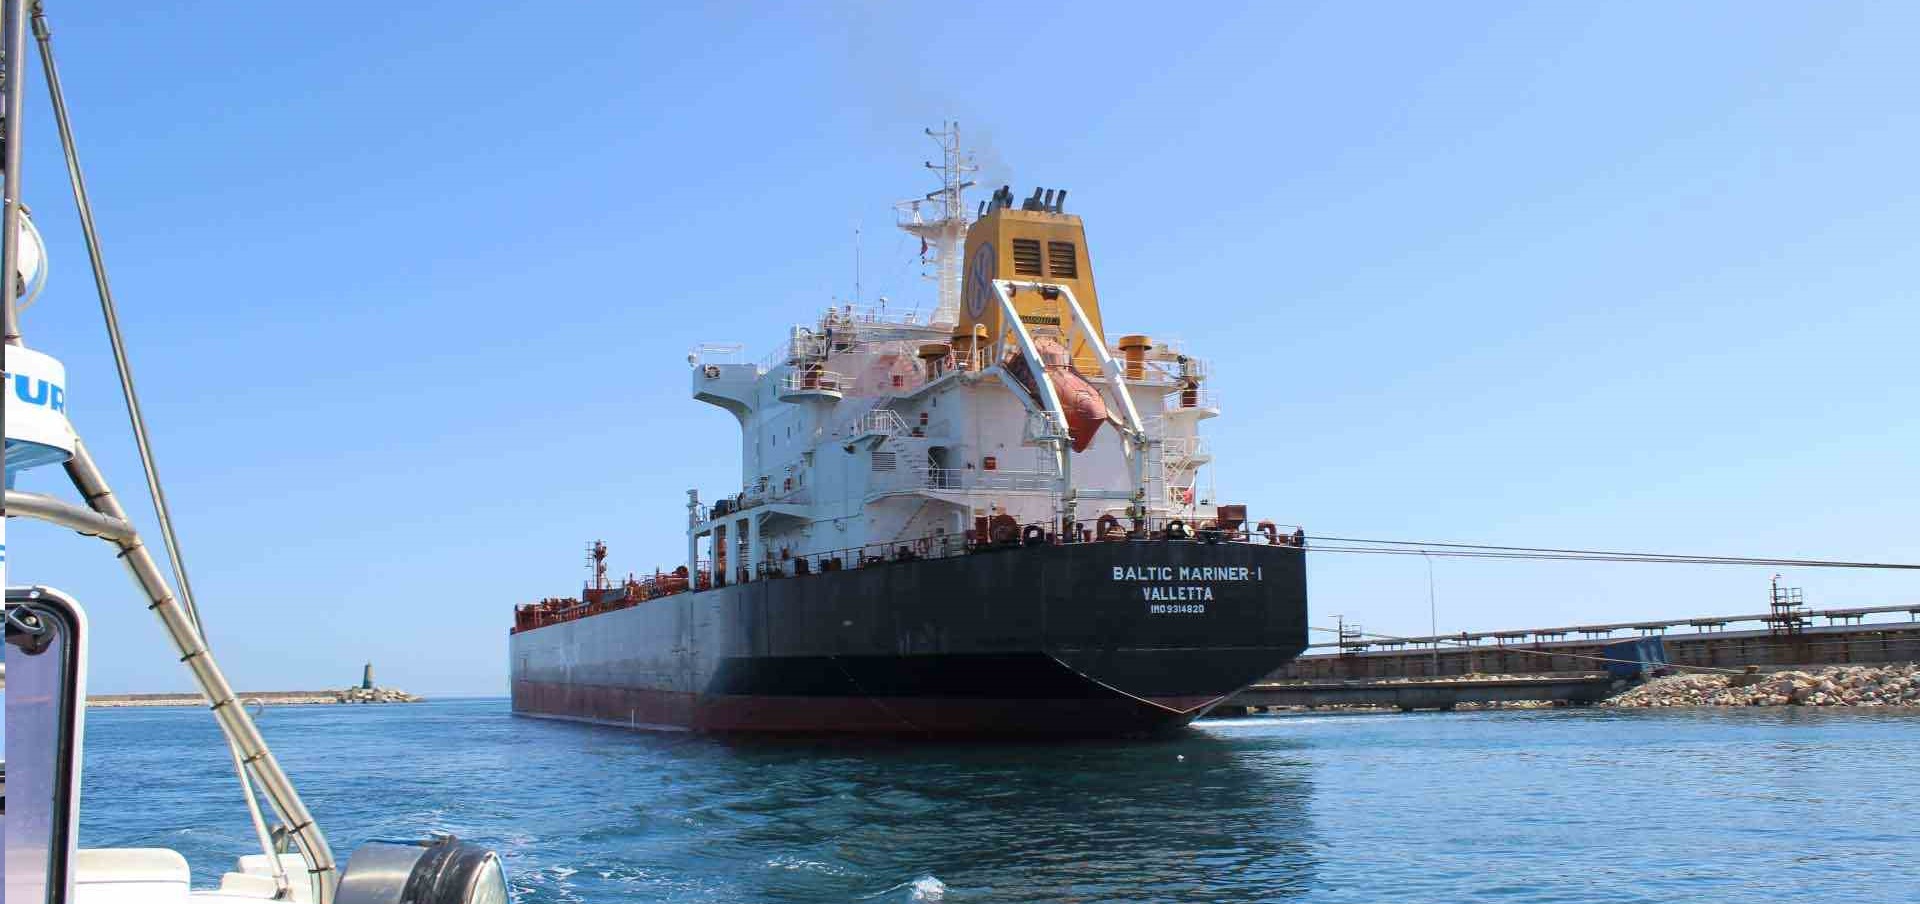 Tunisie – Accostage d’un cargo chargé de 26.9 milles tonnes de sucre